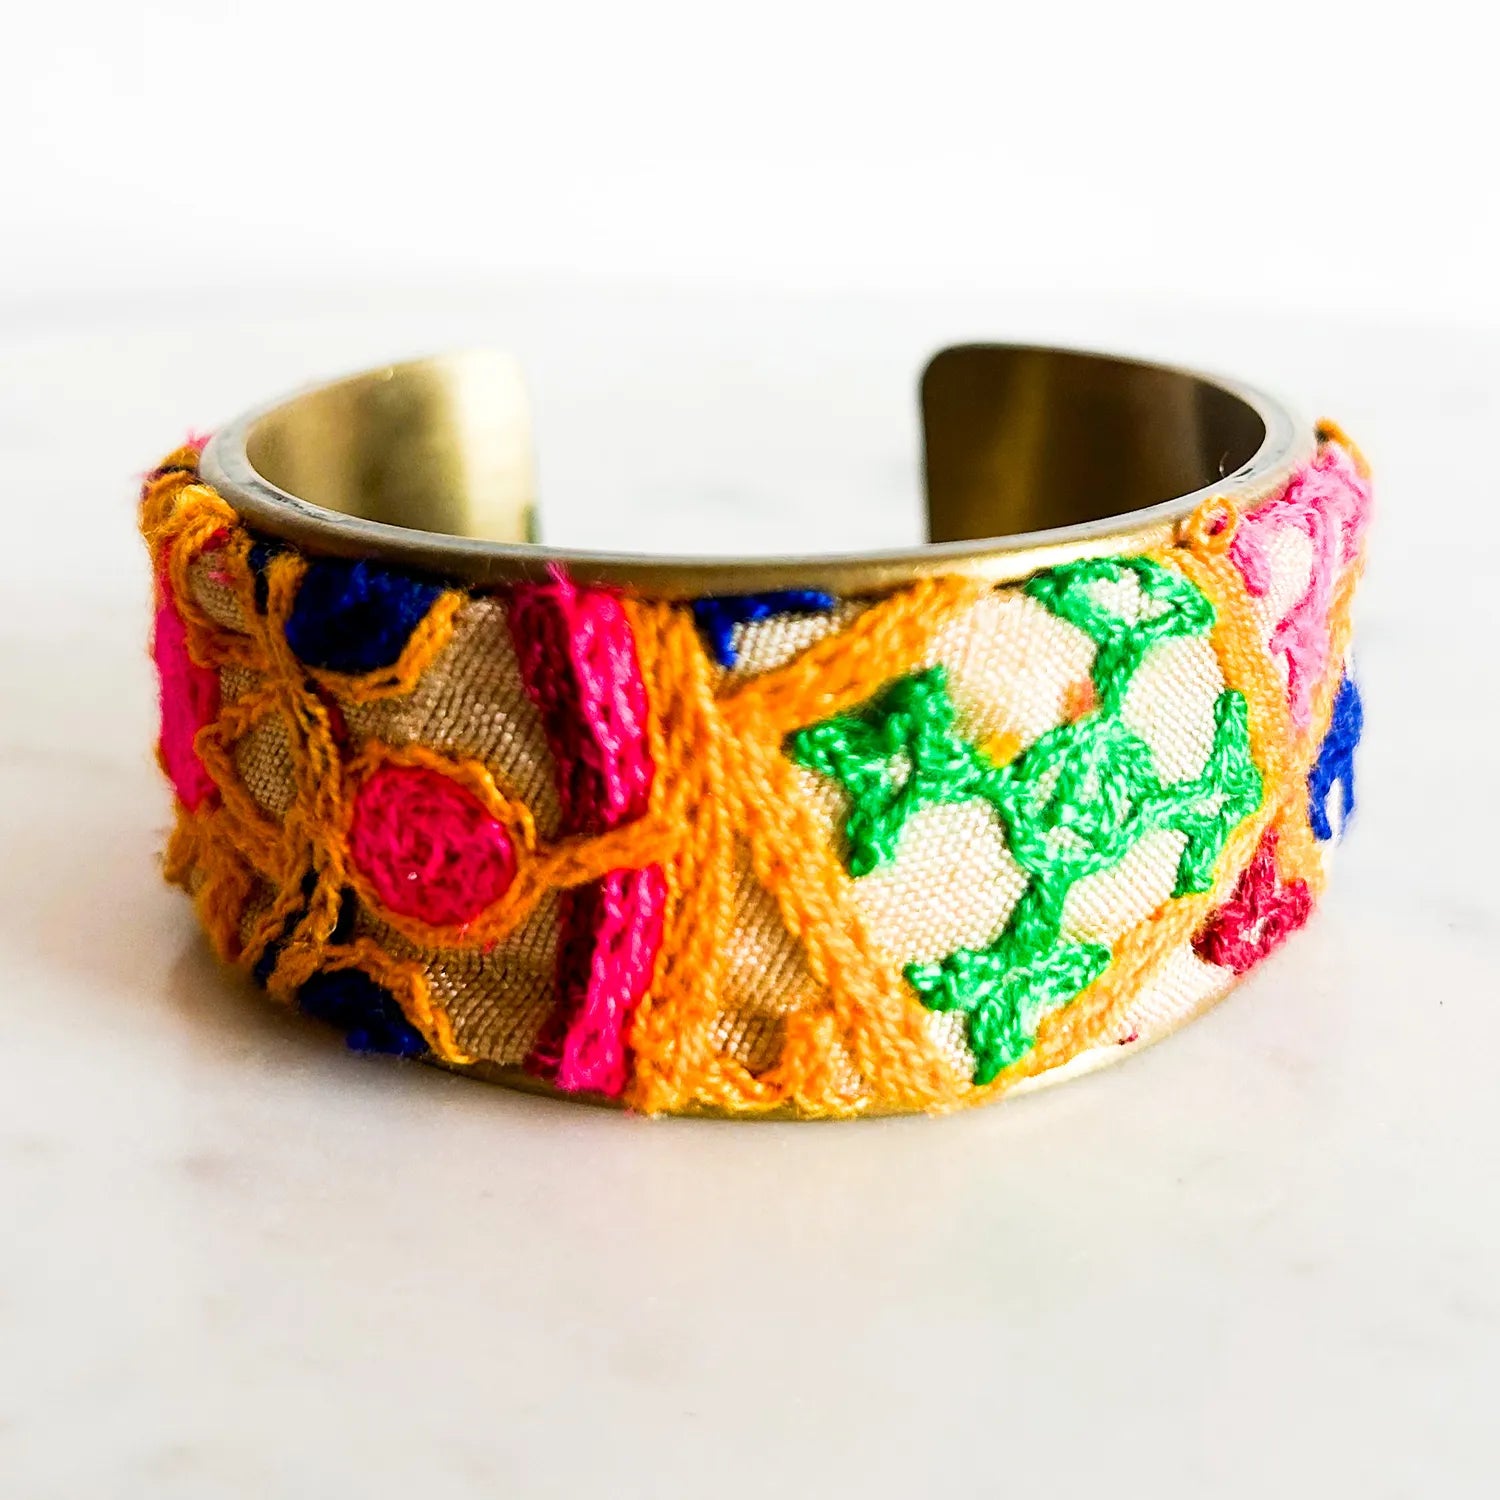 Anika - Vibrant Multicolored Embroidered Cuff Bracelet